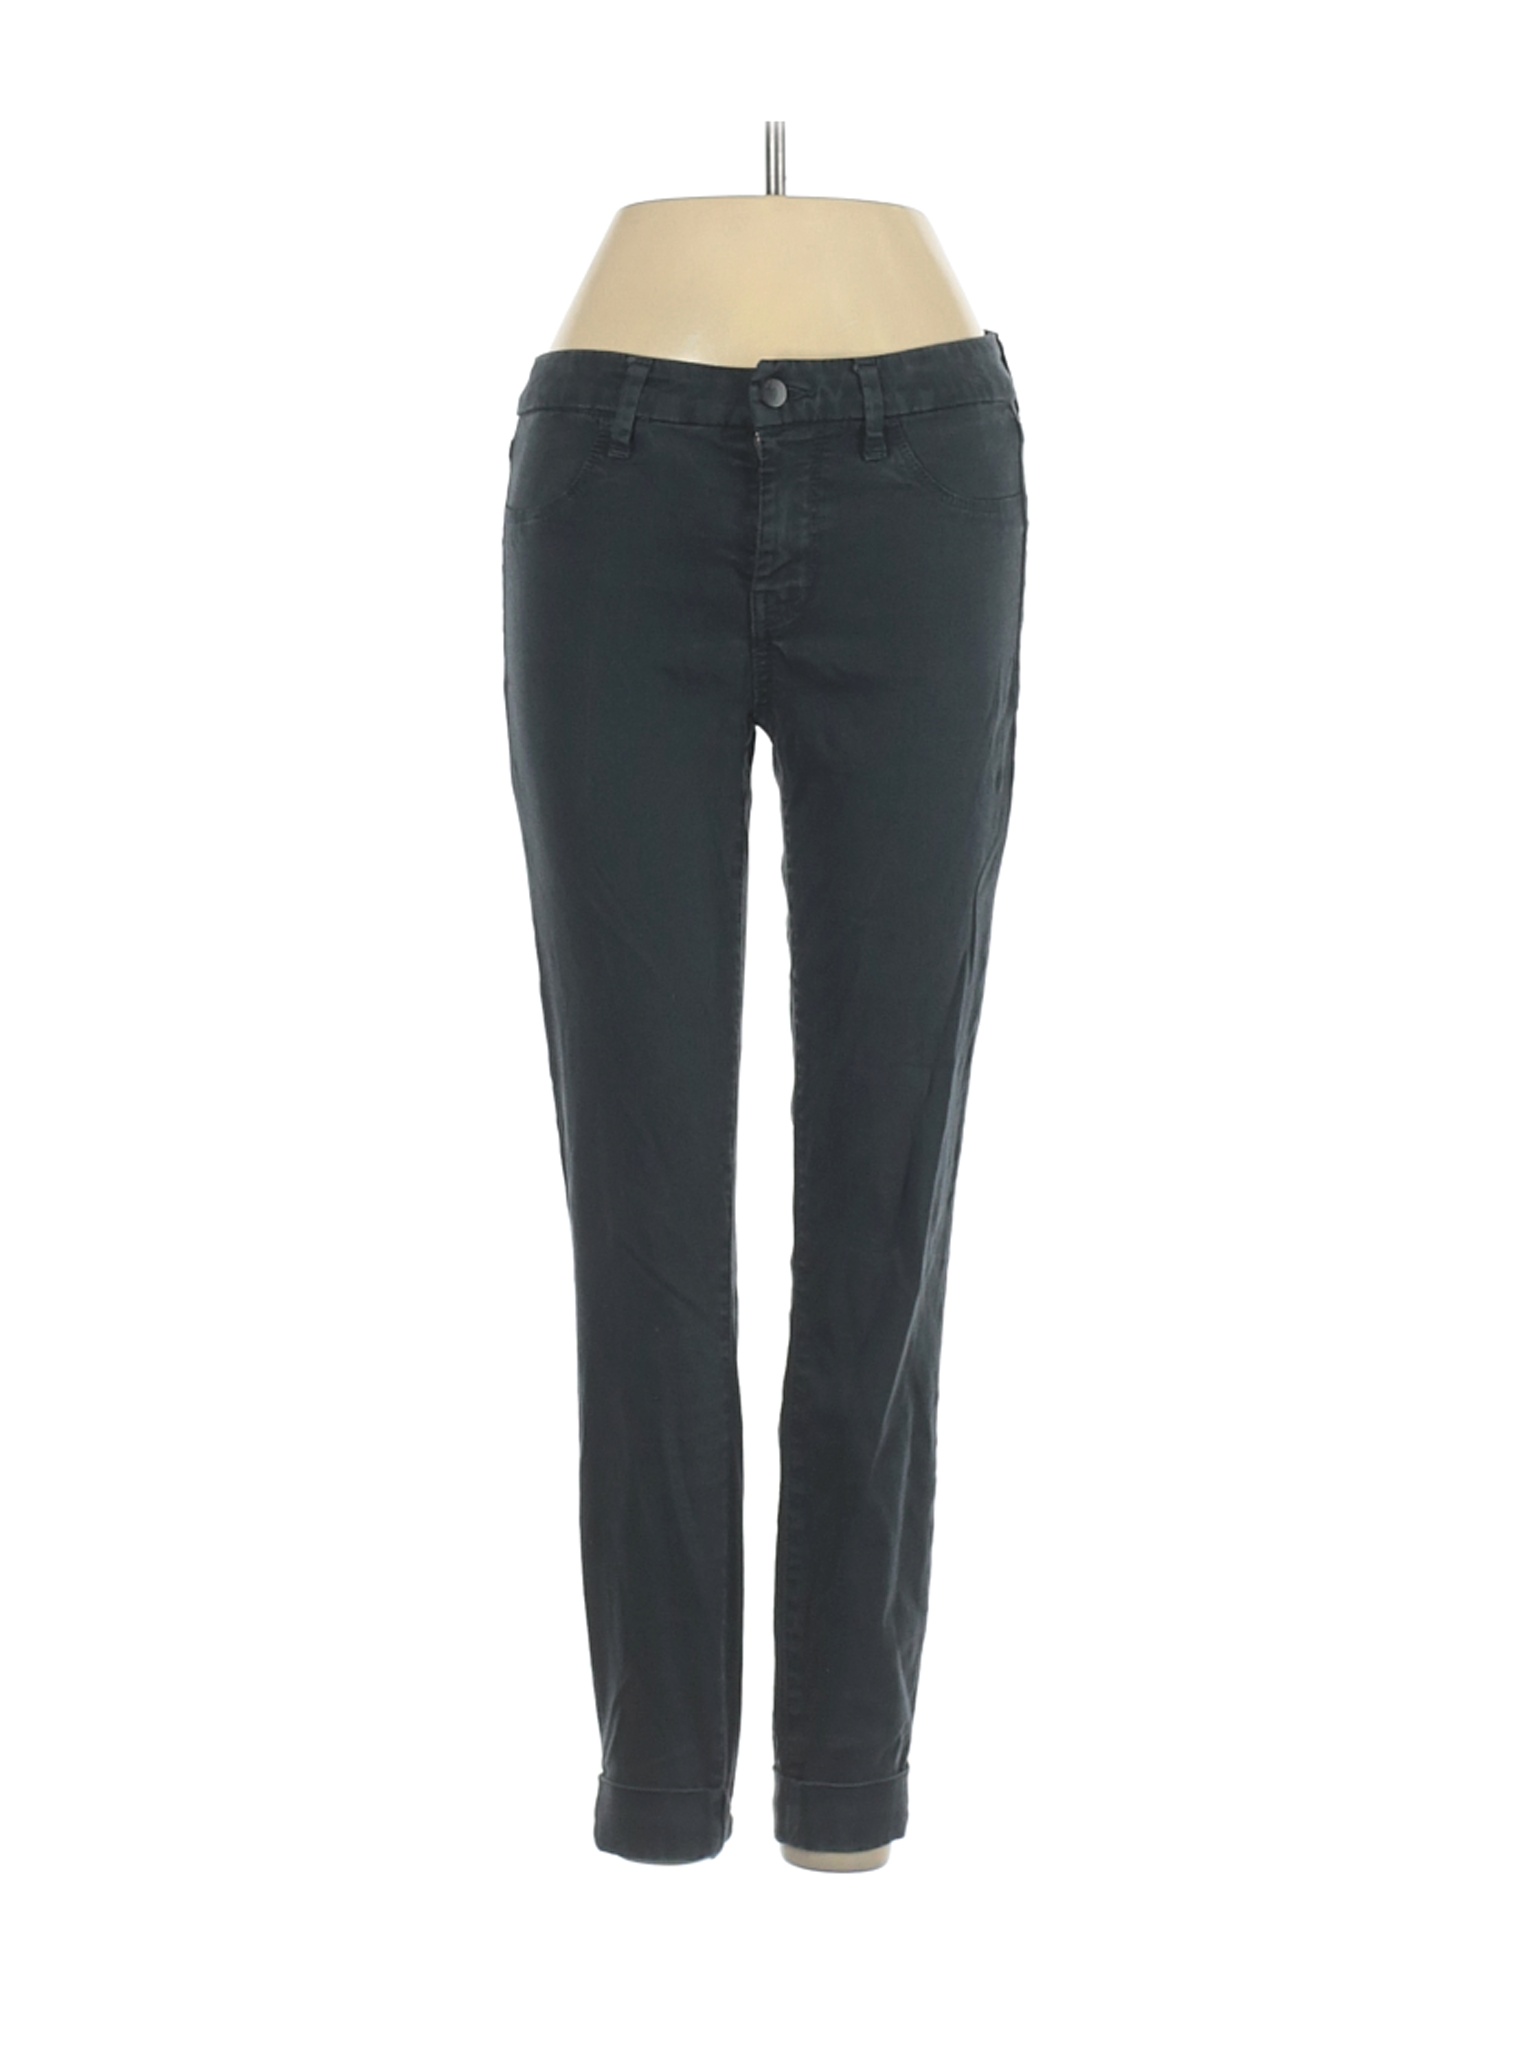 J Brand Women Blue Casual Pants 25W | eBay